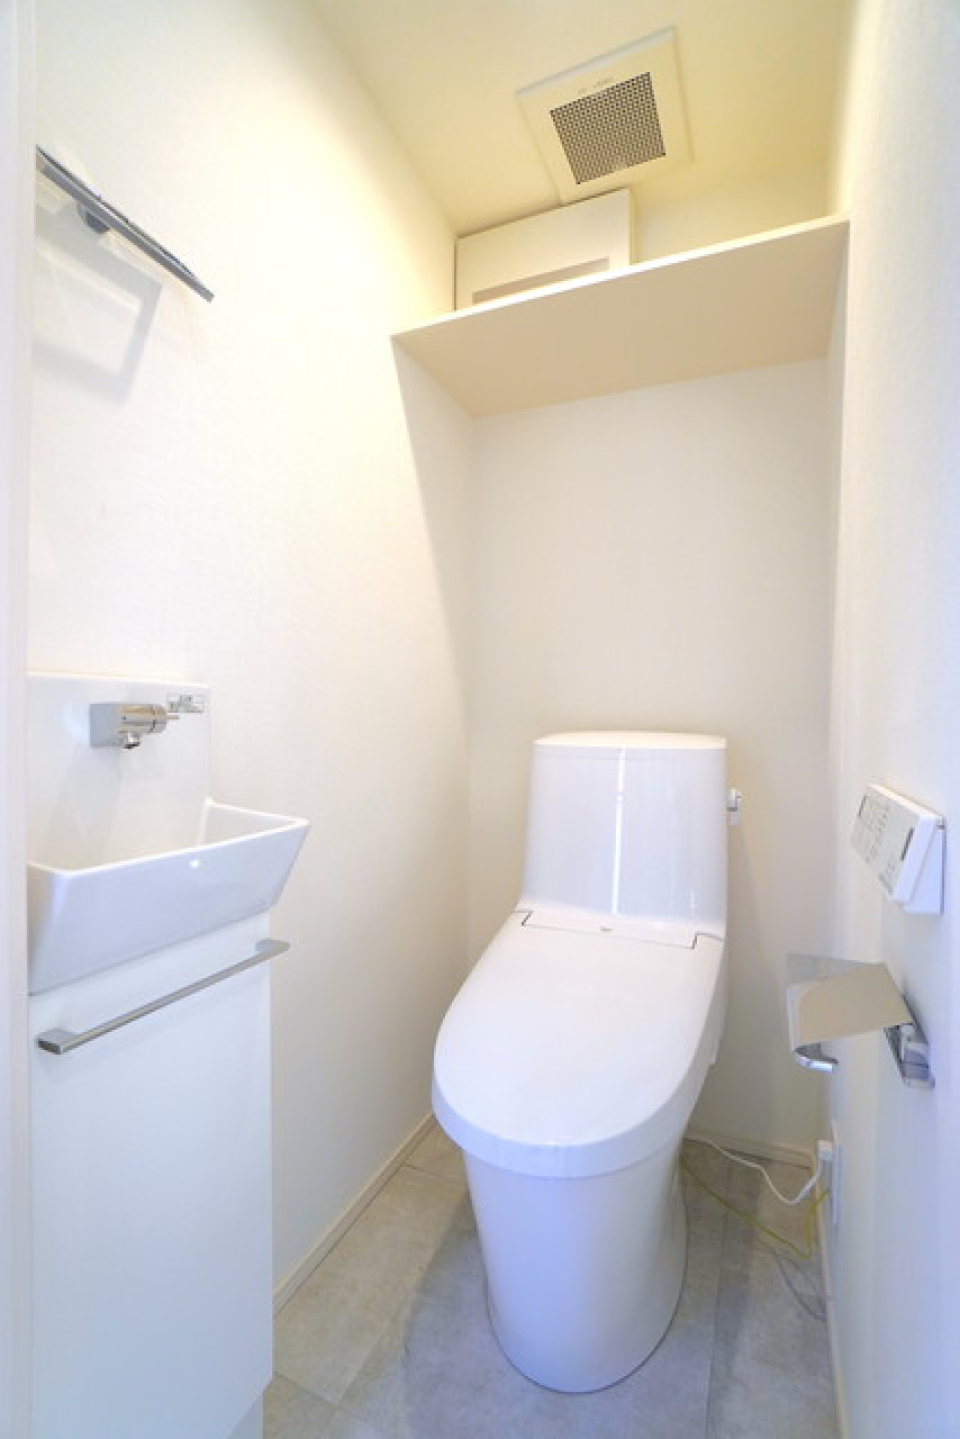 シンプルなトイレです。
※写真は同タイプ住戸です。